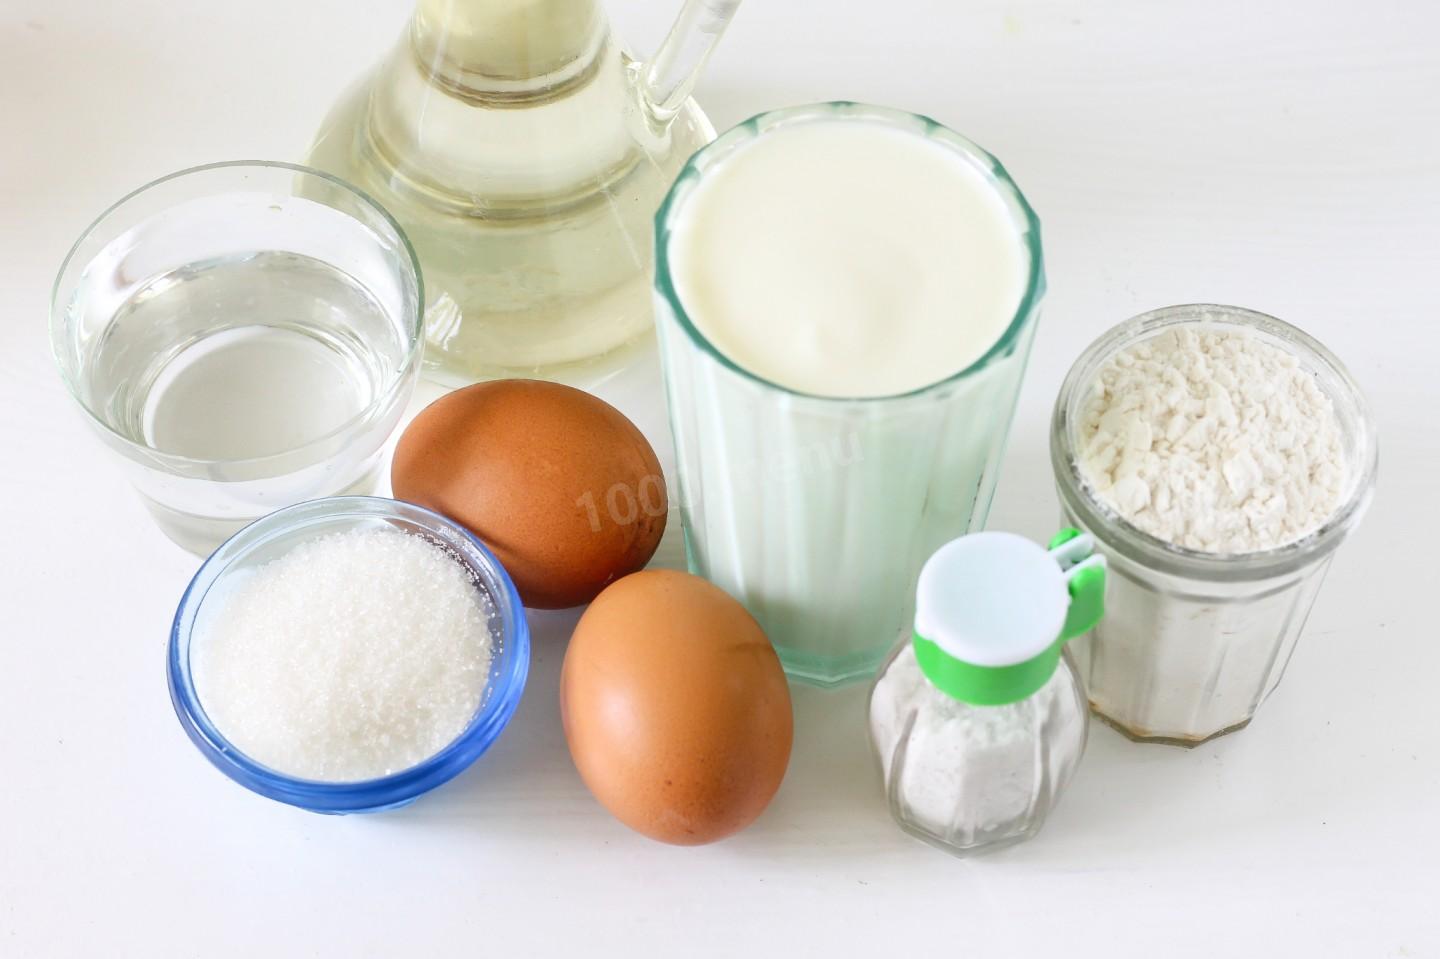 Кефир сахар мука рецепт. Ингредиенты для блинов на кефире. Кефир и мука. Кефир яйцо растительное масло сахар. Кефирный продукт, термизированный,.